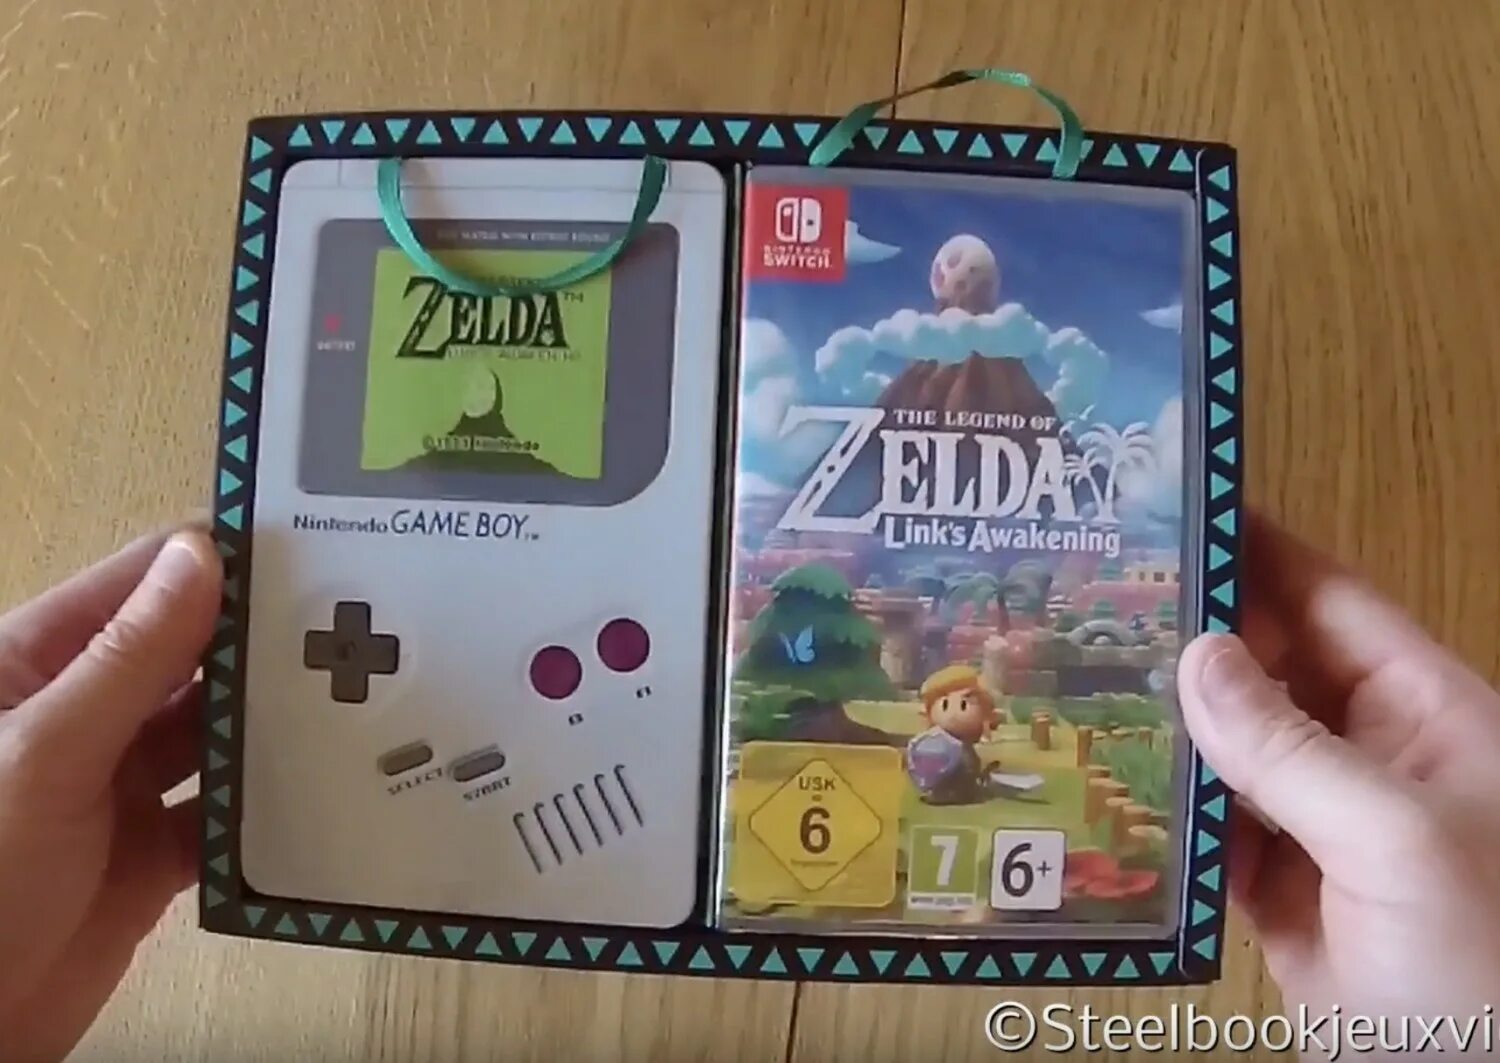 The Legend of Zelda игра Nintendo. Nintendo Switch Zelda Edition. Zelda link's Awakening Nintendo Switch. Zelda игра на Нинтендо. Nintendo link